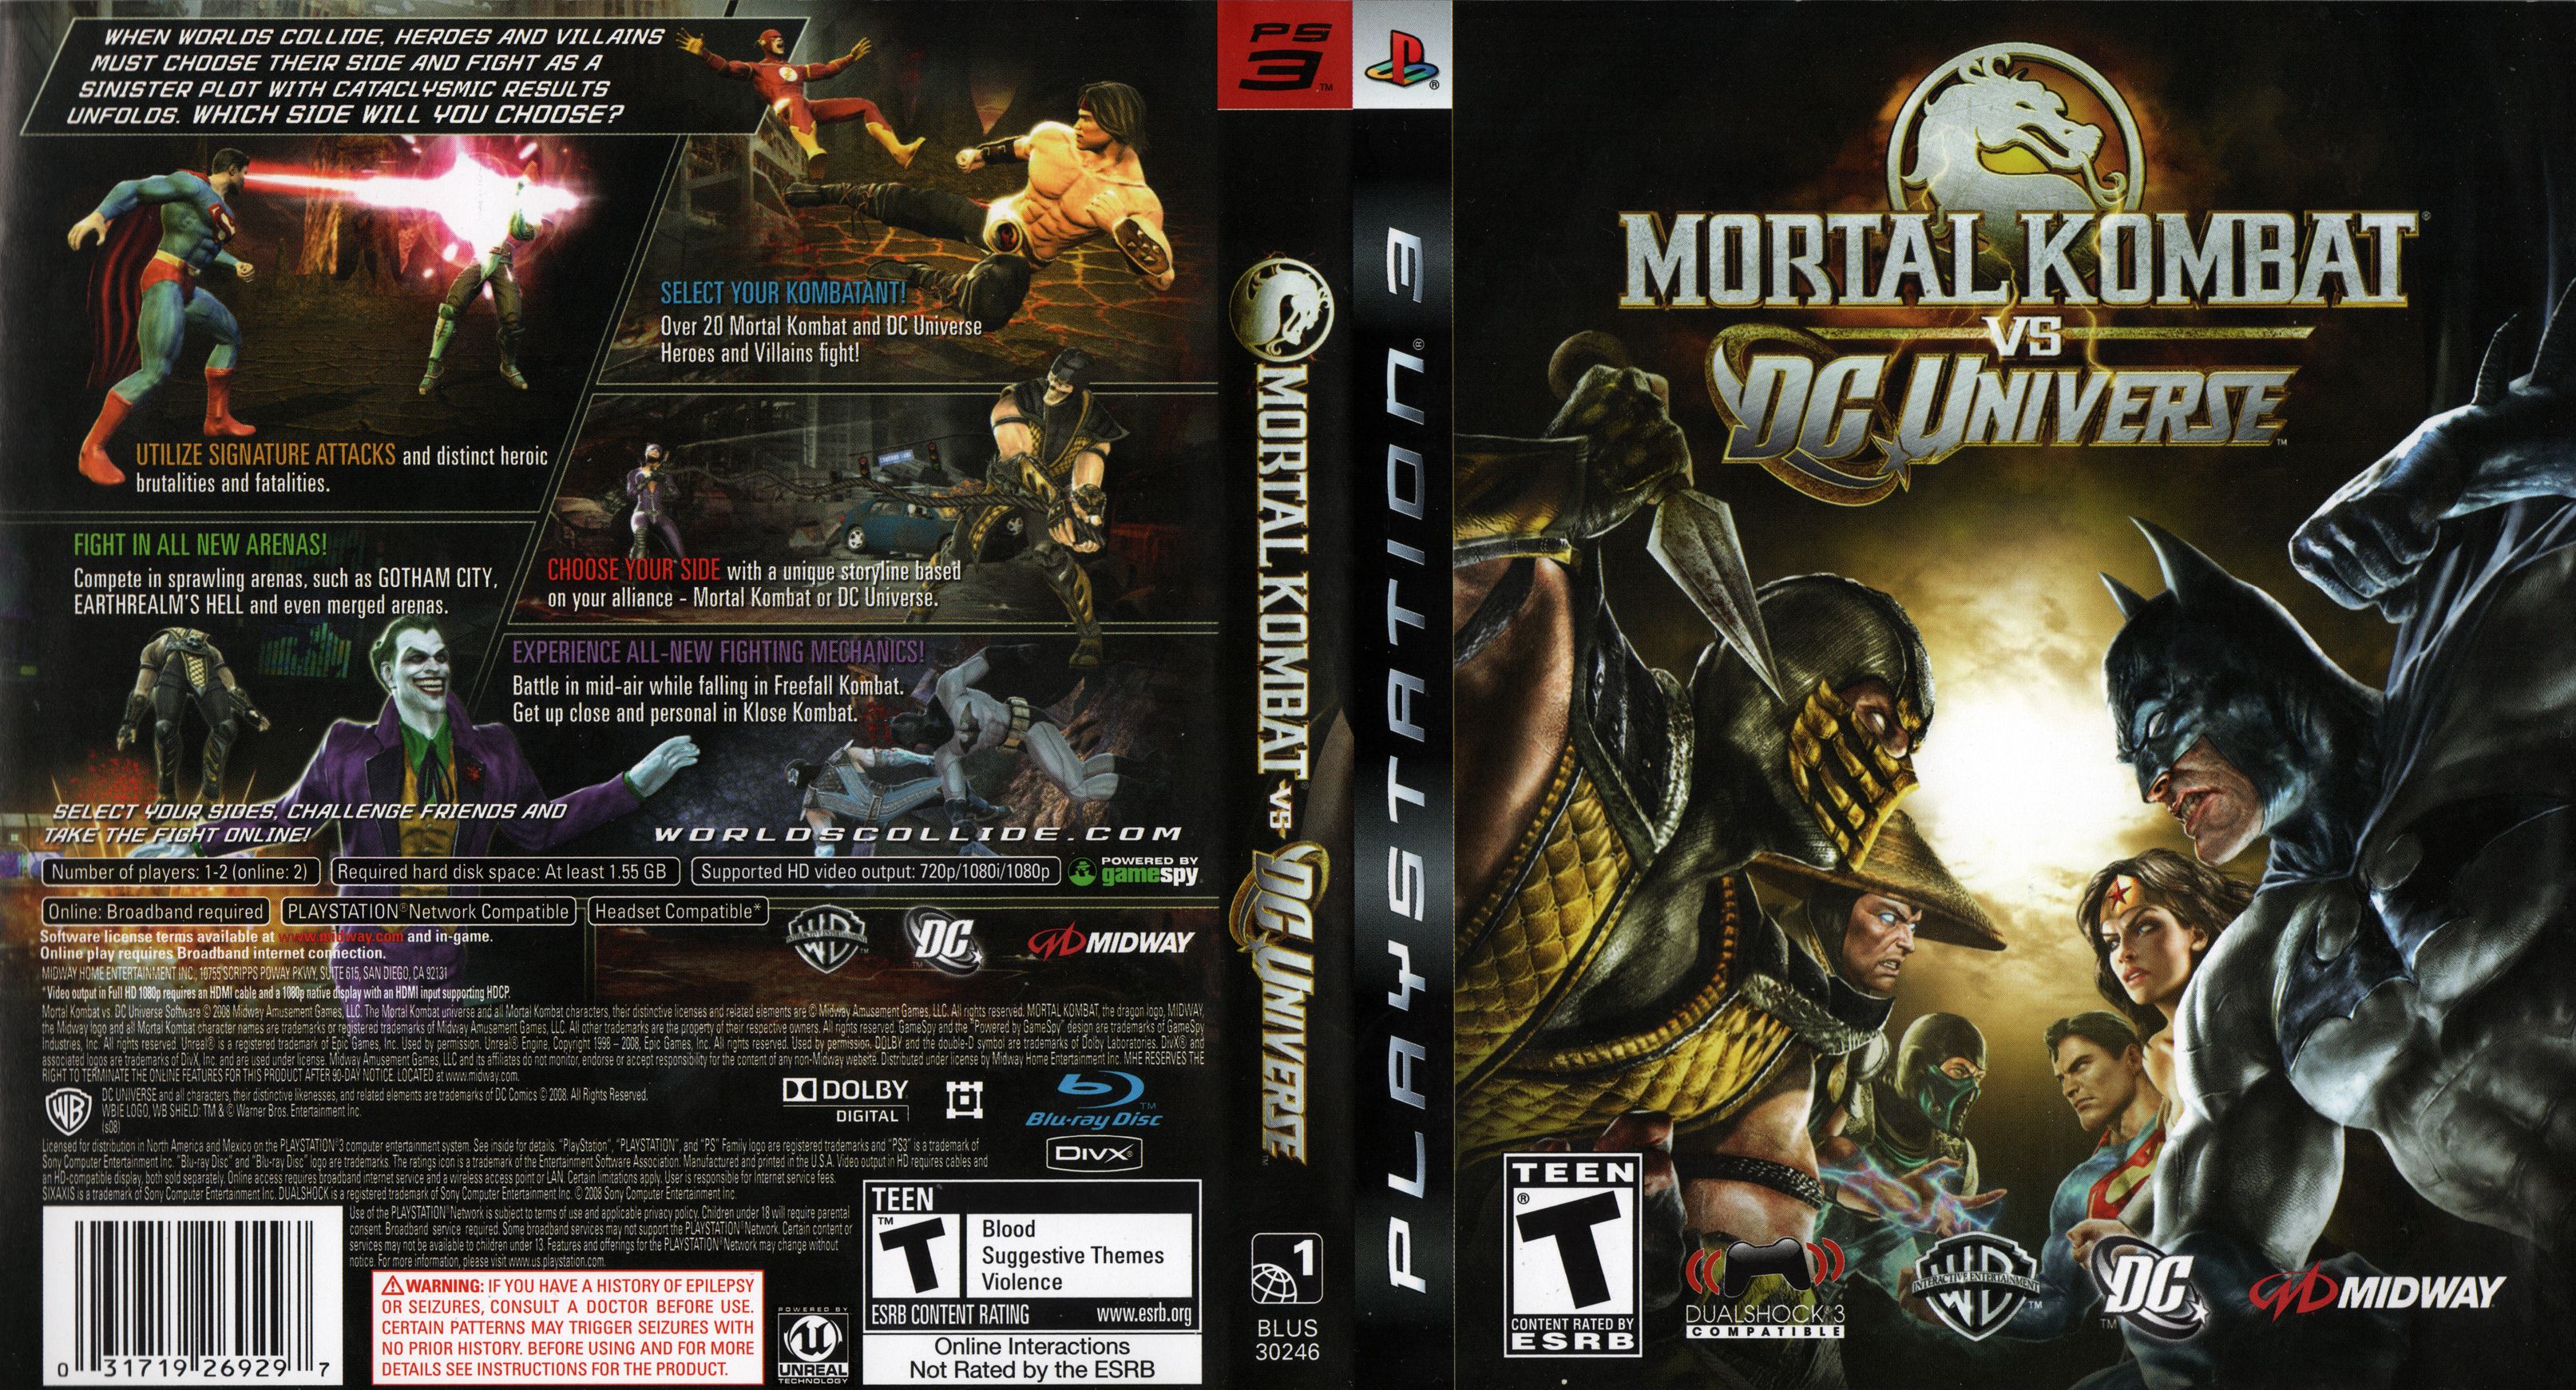 3226x1741px Mortal Kombat Vs Dc Universe 7664.17 KB